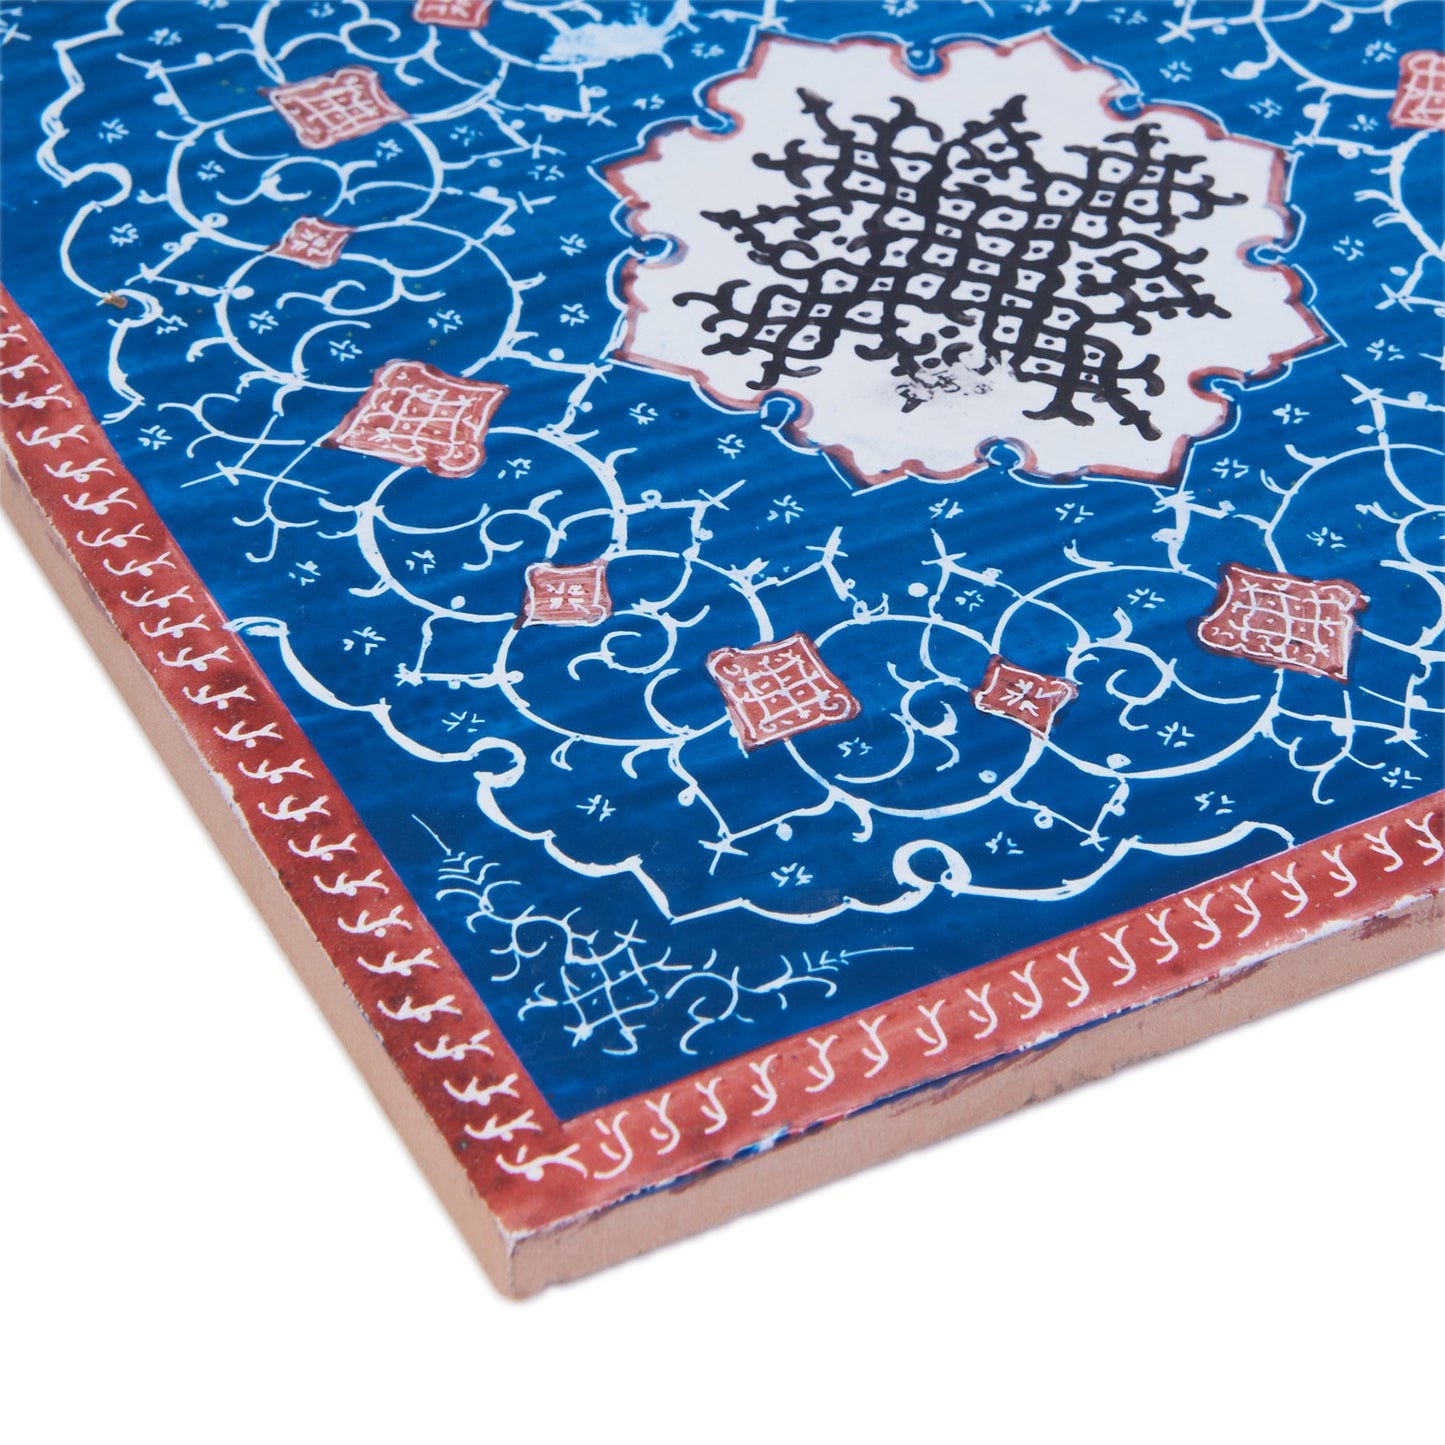 Isfahan Elegance Clay Tile